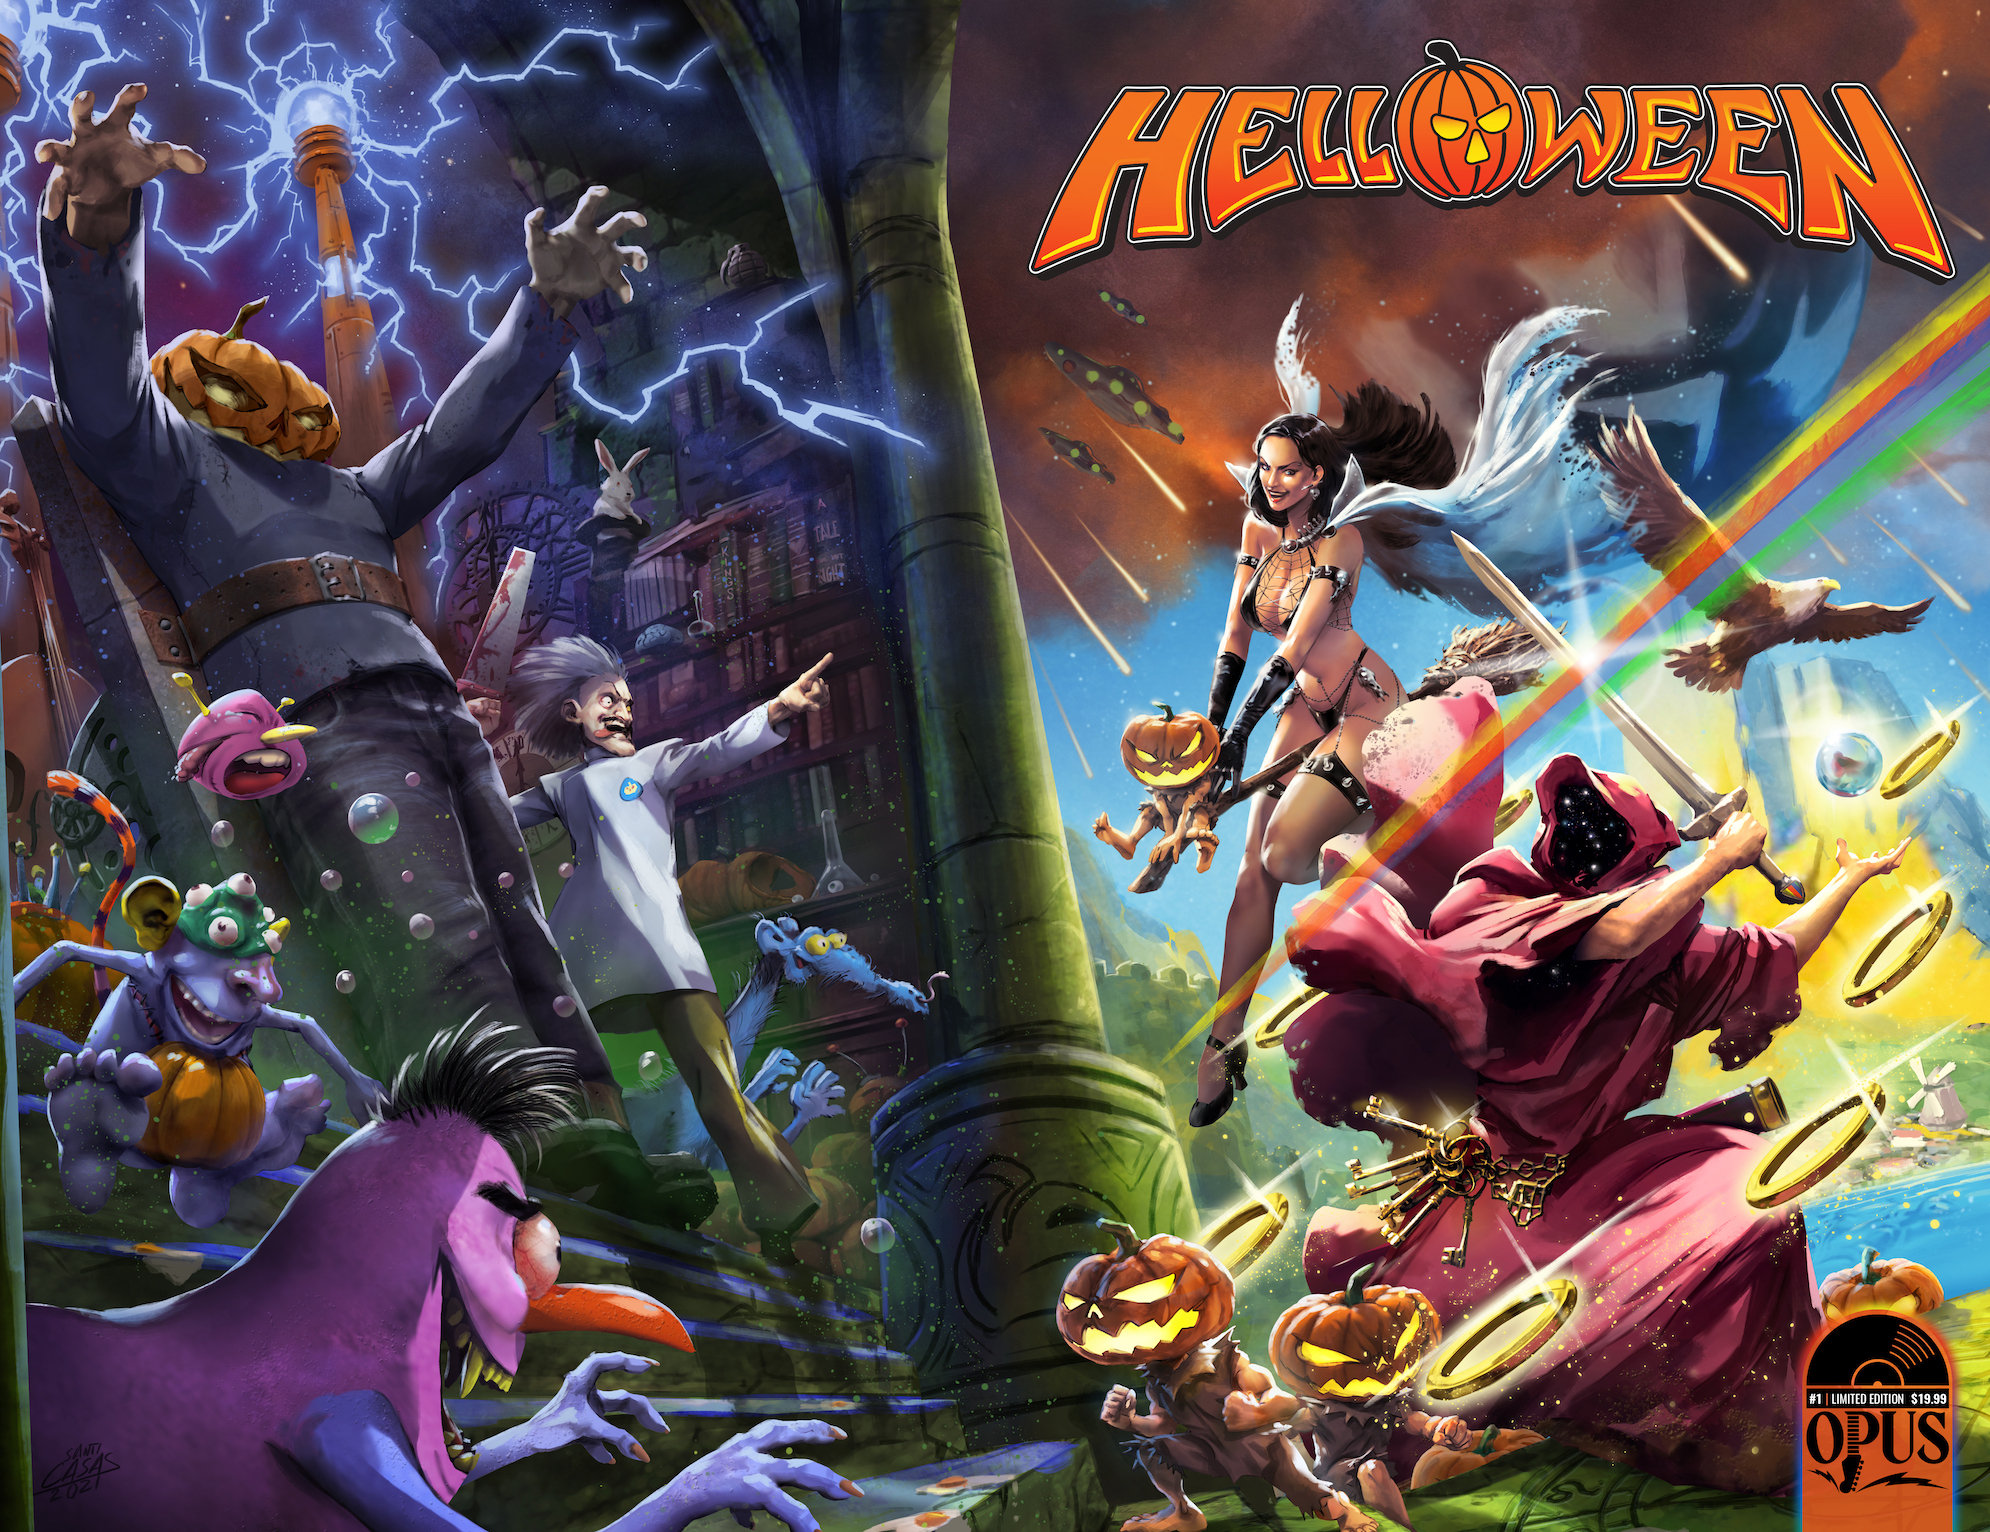 helloween-arbeitet-mit-incendium-fuer-comicbuch-und-action-figuren-zusammen